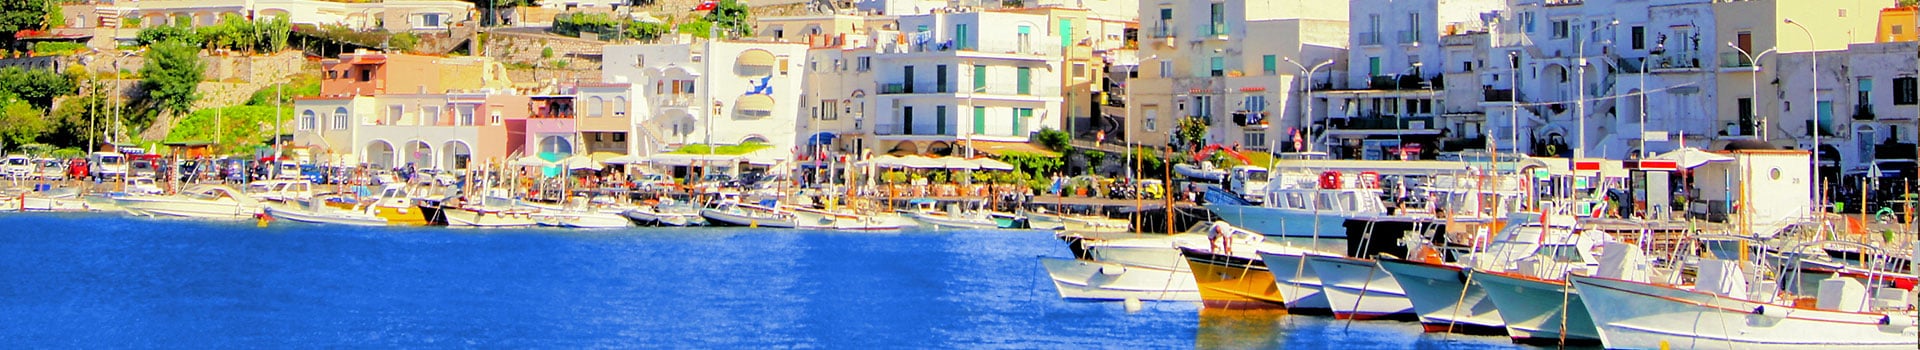 Biglietti da Nave da Napoli a Capri